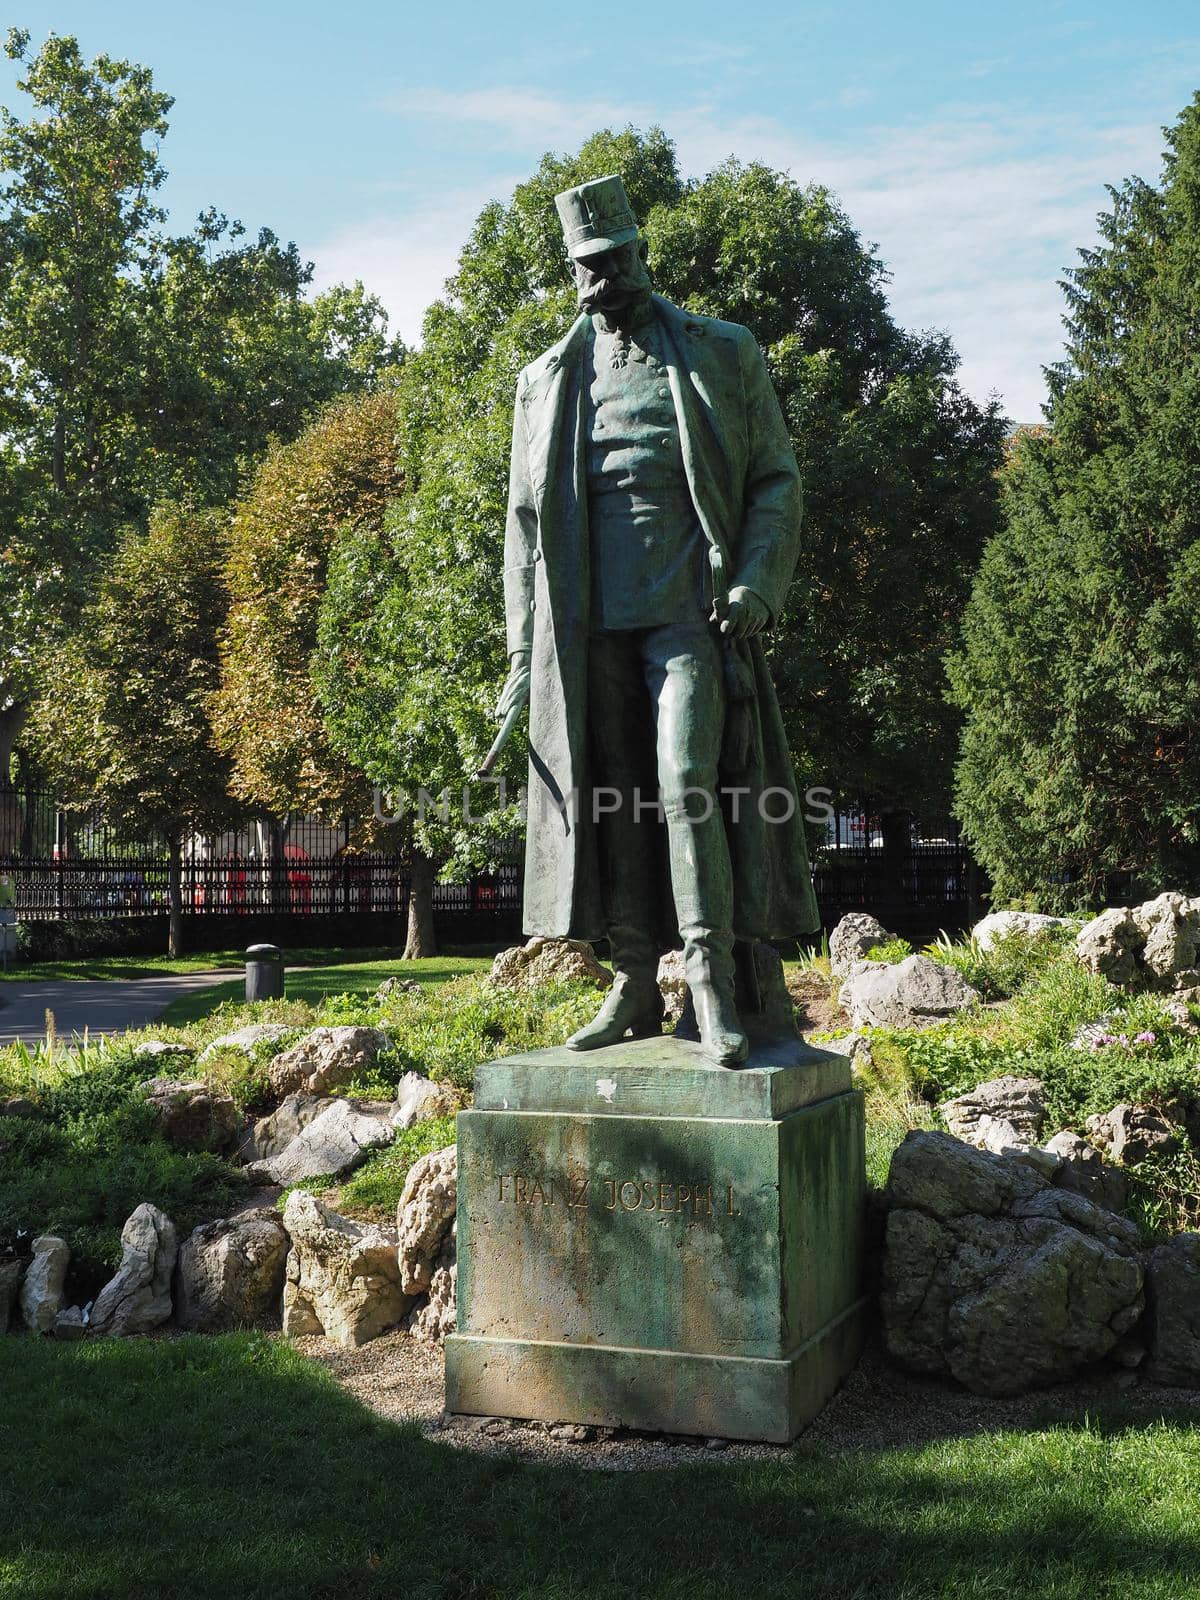 Franz Joseph I statue in Vienna by claudiodivizia